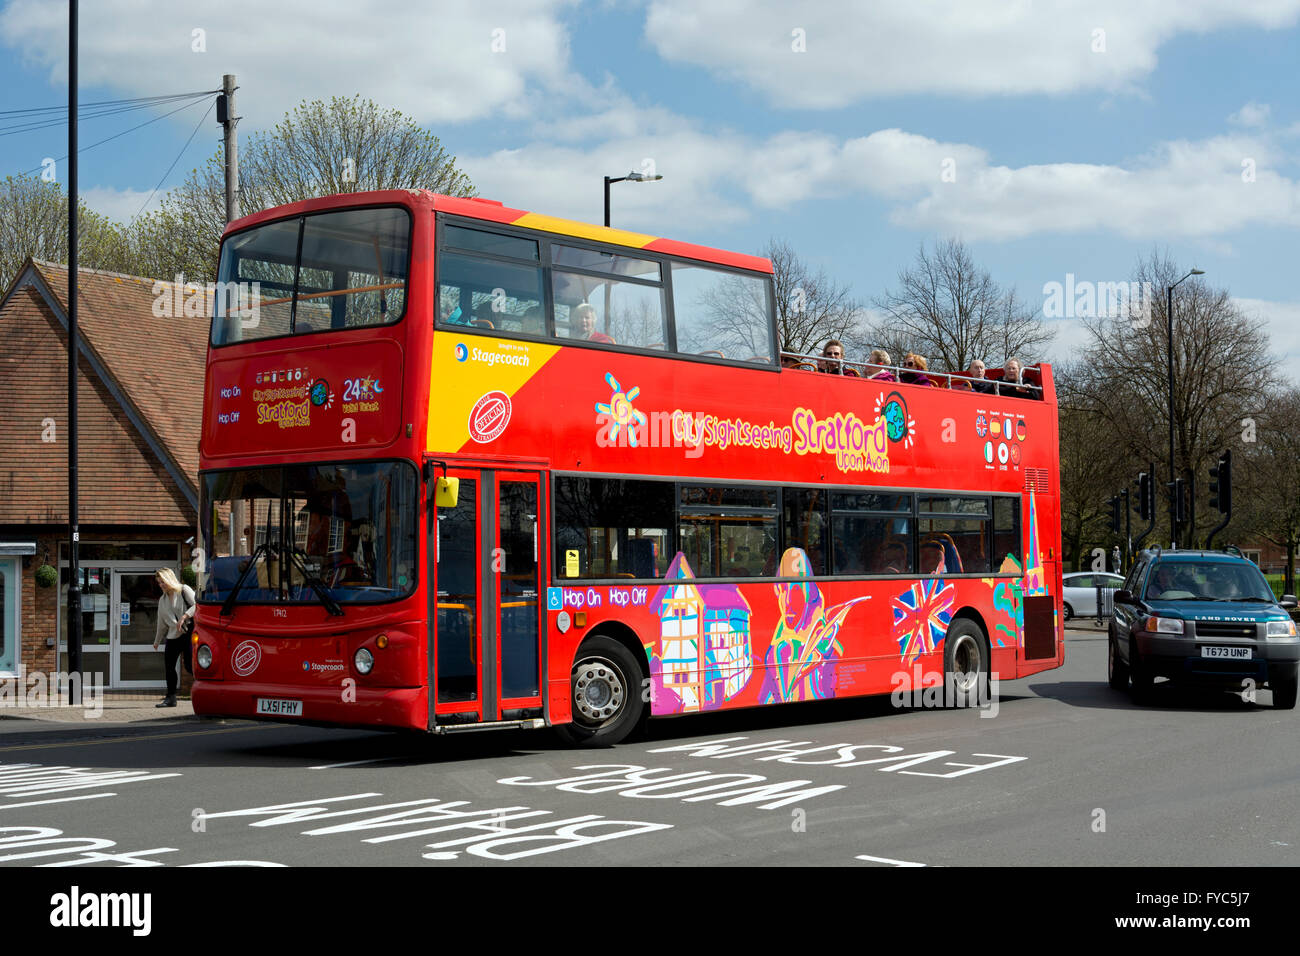 Open top bus tour, Stratford-upon-Avon, UK Stock Photo